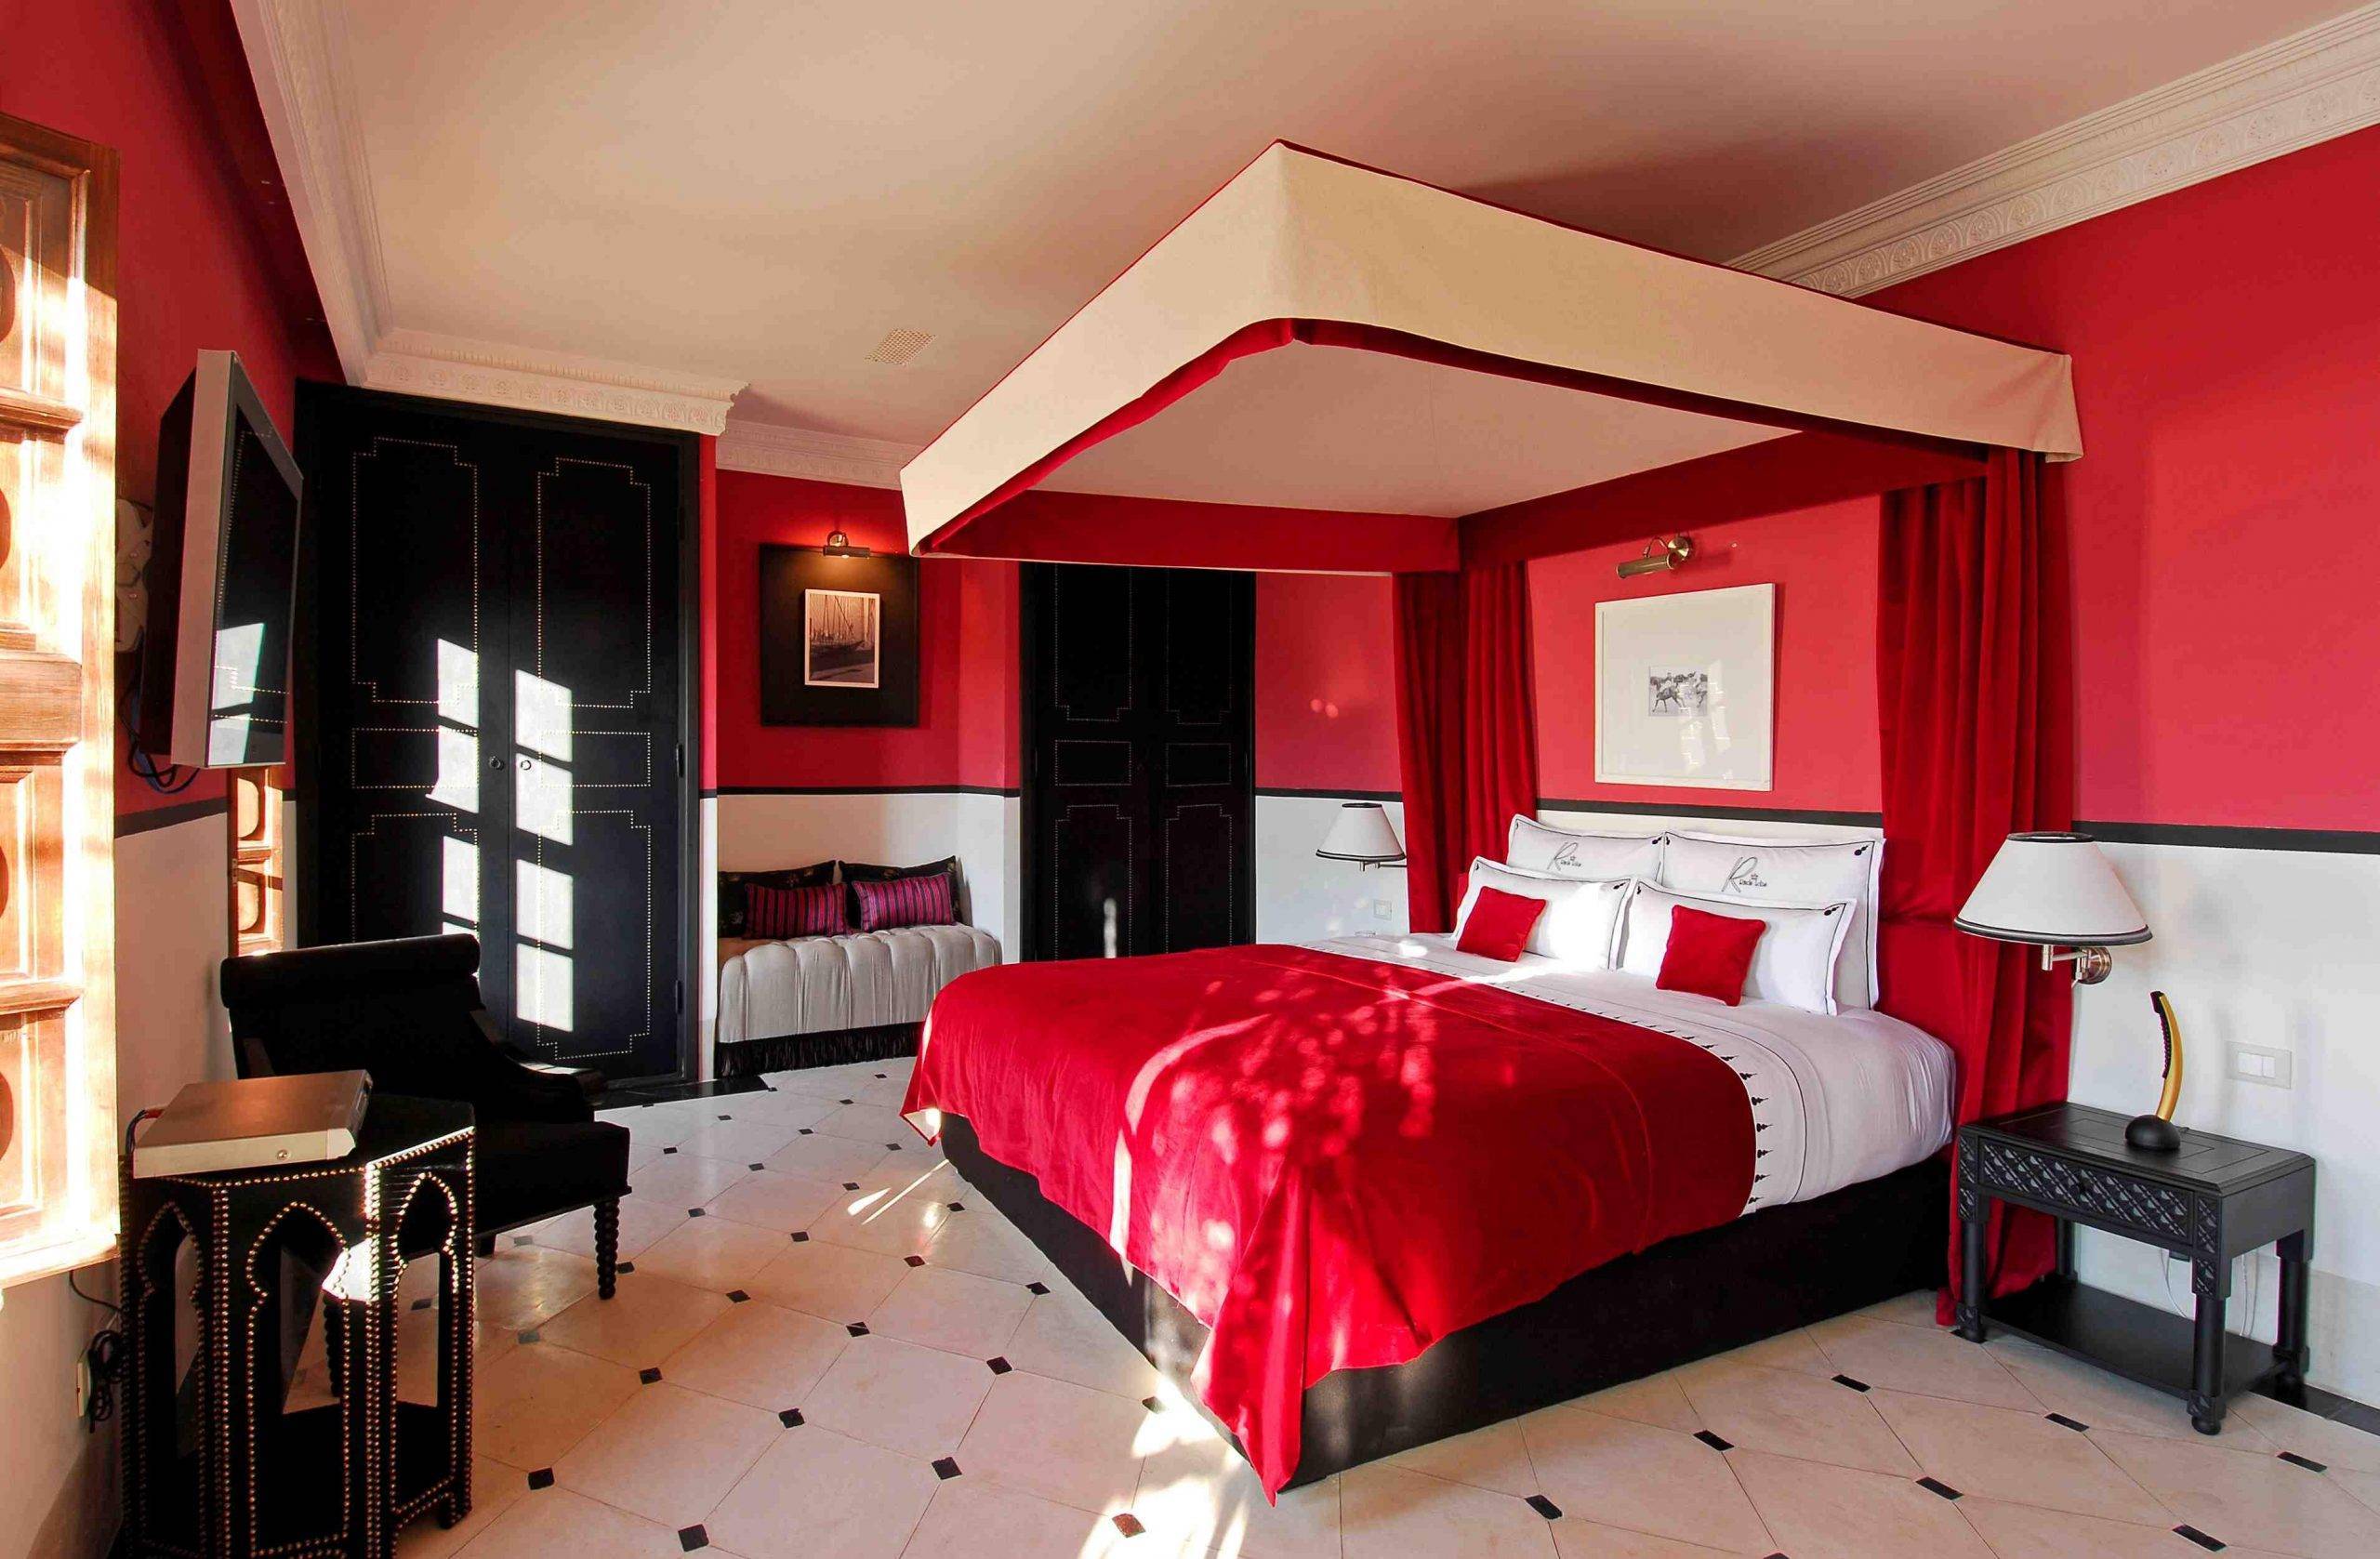 Красная спальня: 135 фото идей и секретов оформления, реальные примеры дизайна интерьера с красивым сочетанием красного цвета